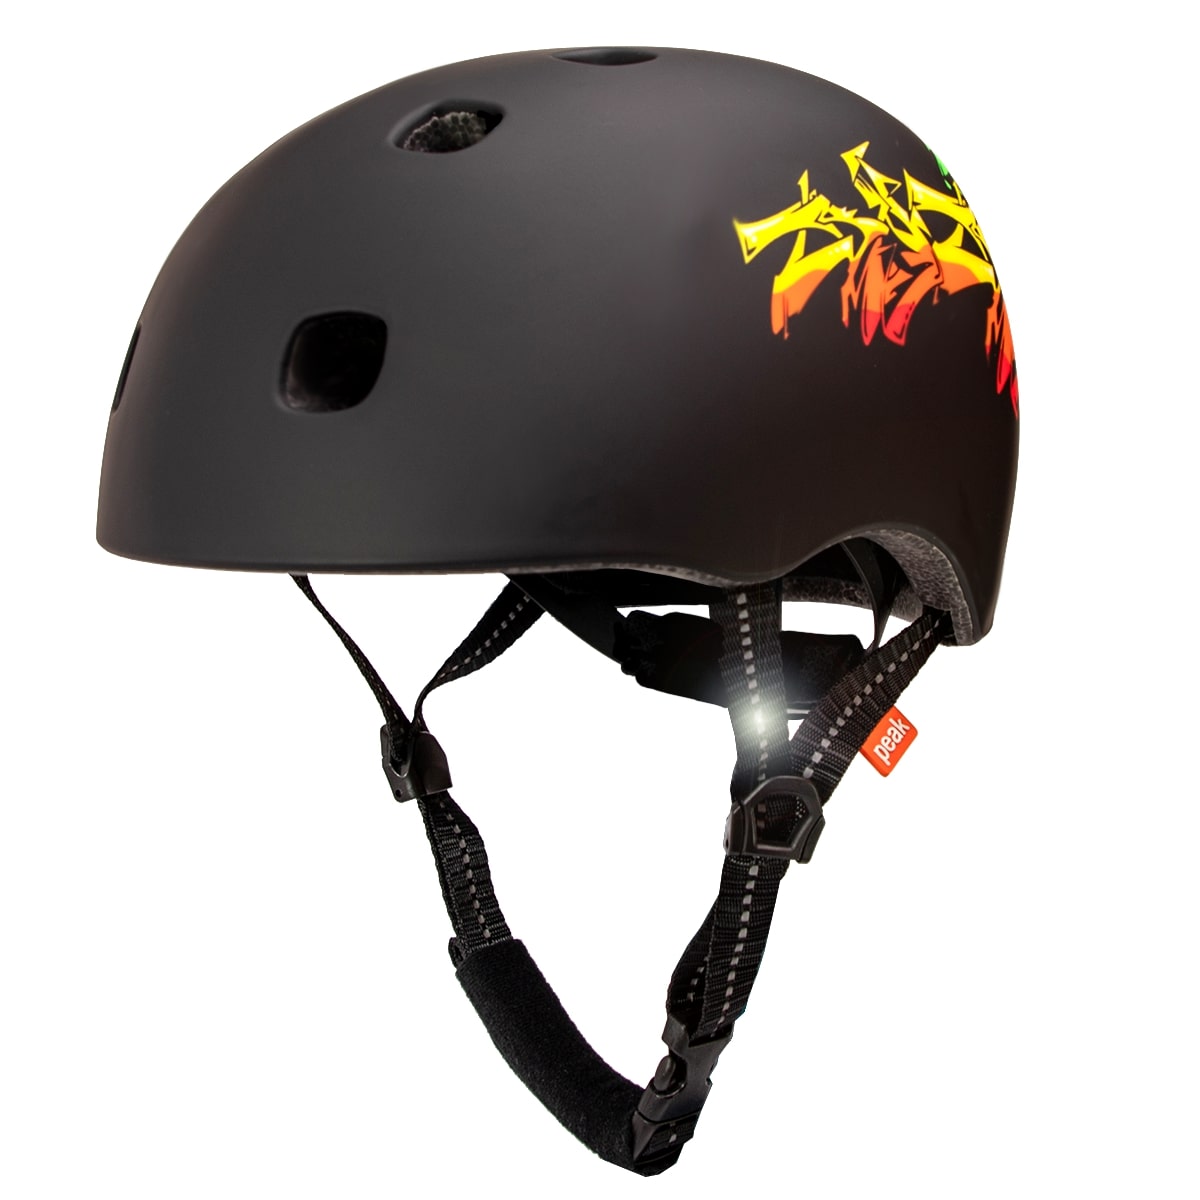 Crazy Safety sort in-mould Skater cykelhjelm til teens & voksne. Testet, certificeret og godkendt EN1078